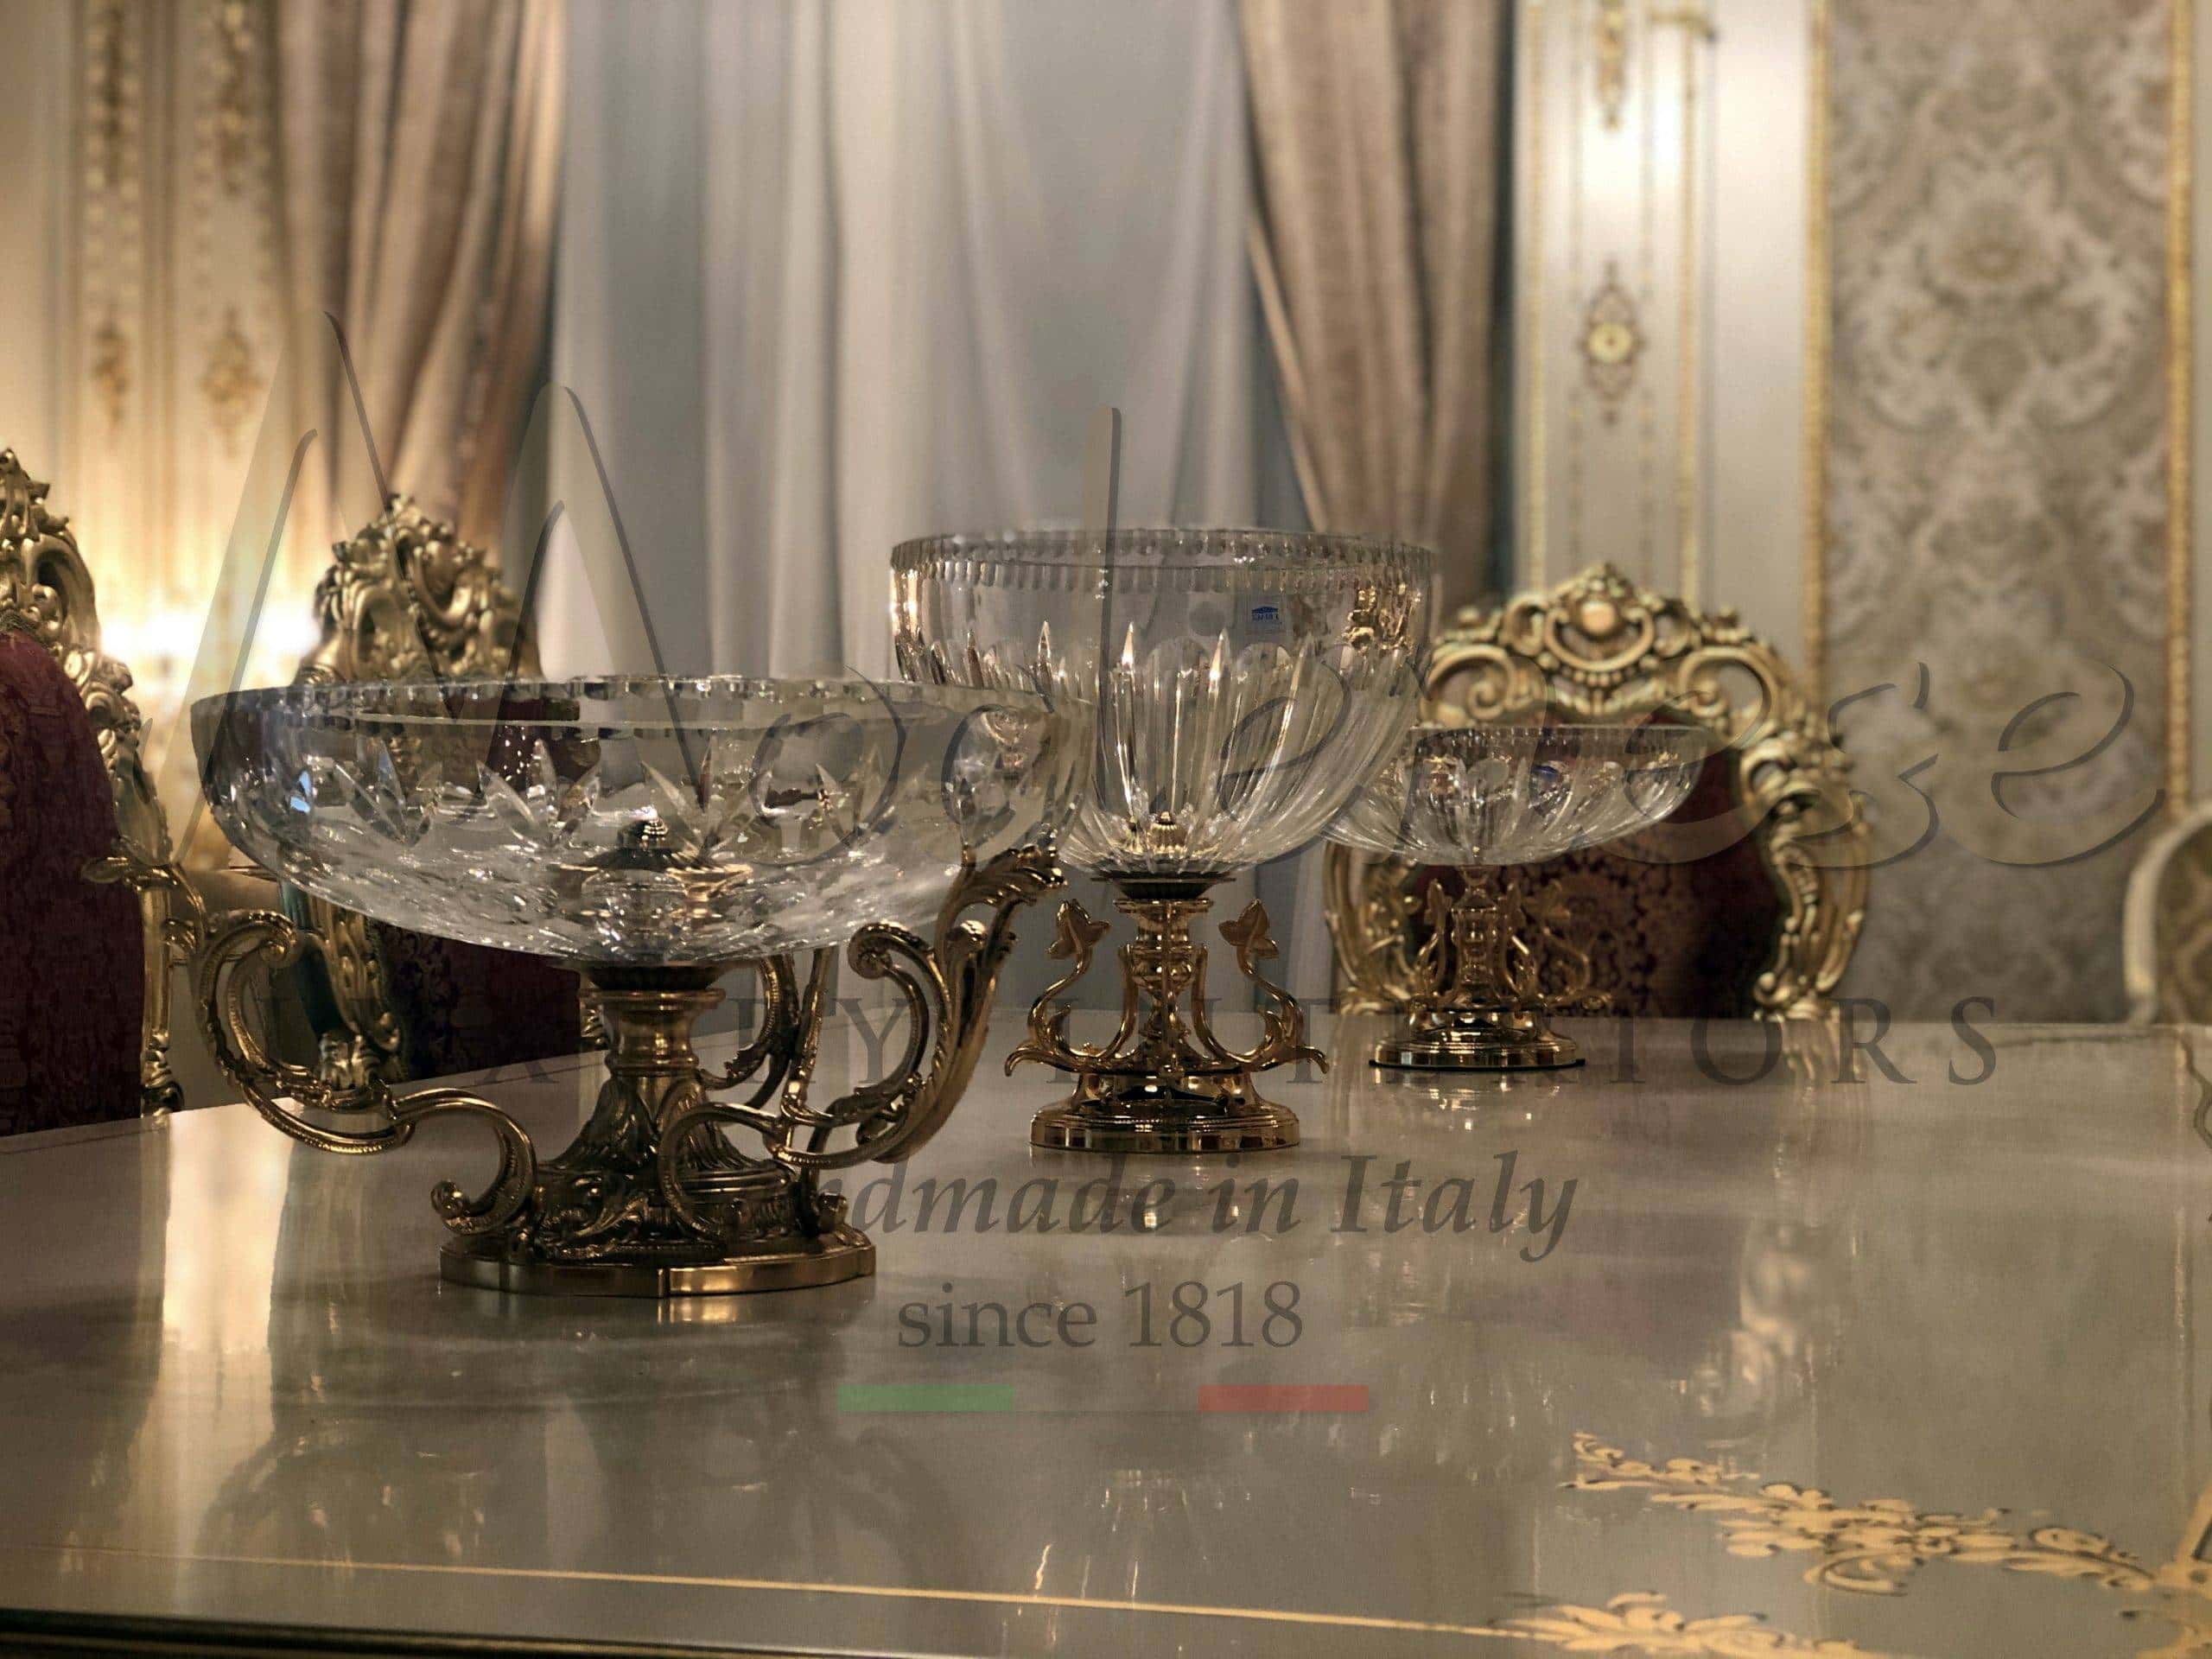 luxusní klasické doplňky vázy stojany ručně malované obrazy zlaté opulentní drahé materiály výběr interiérový design domácí dekorace ozdobné prvky nejlepší služby poradce italská valita ruční italská kvalita tradiční nadčasové špičkové doplňky designov